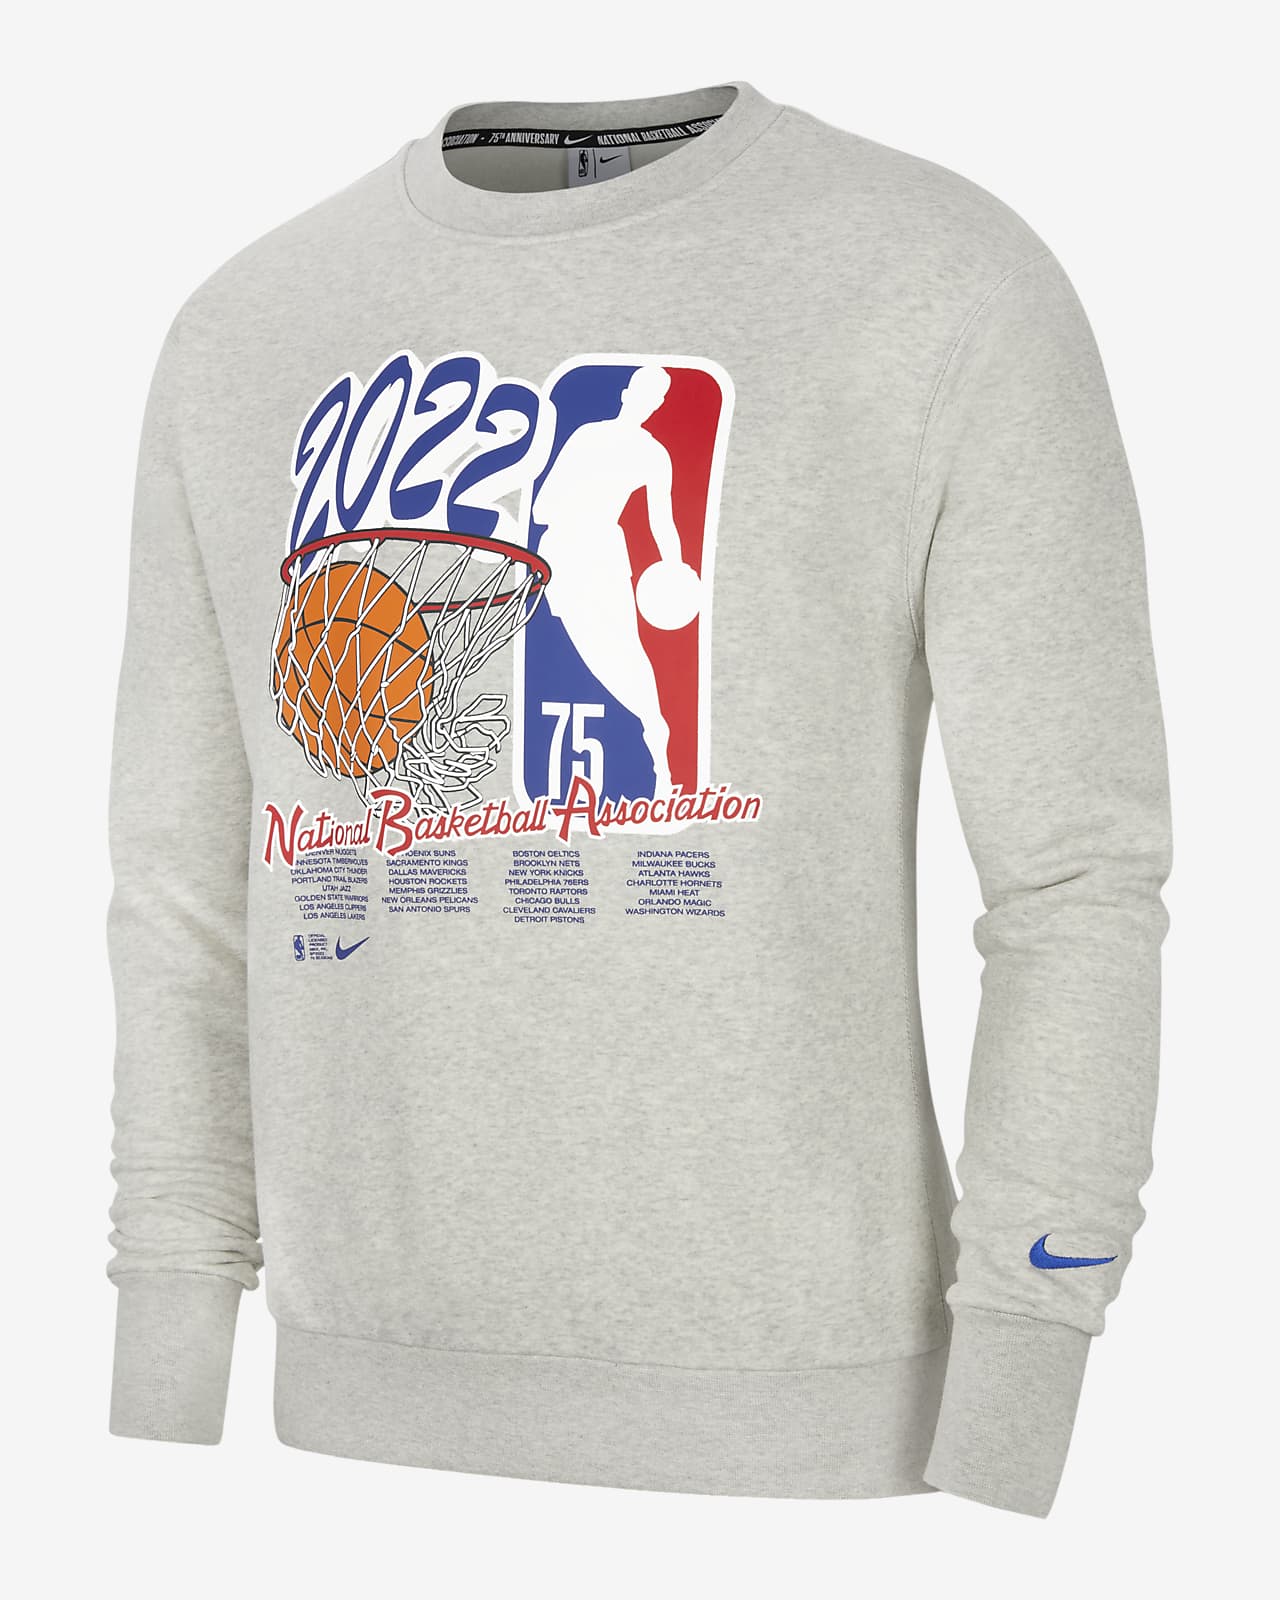 Team 31 Courtside Men's Nike NBA Fleece Sweatshirt